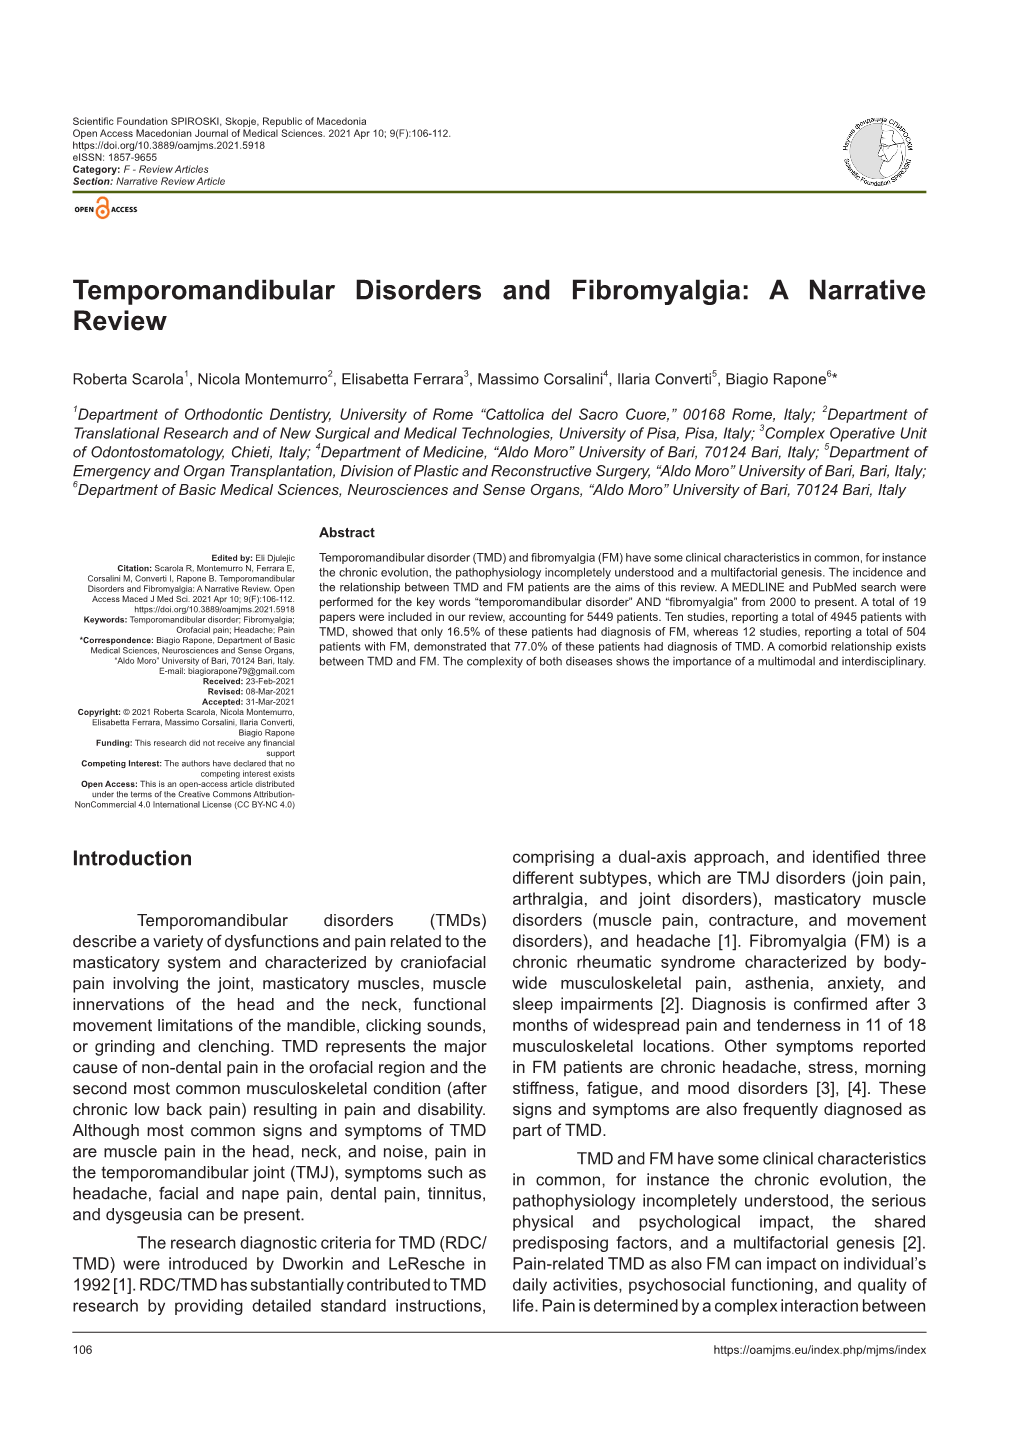 Temporomandibular Disorders and Fibromyalgia: a Narrative Review